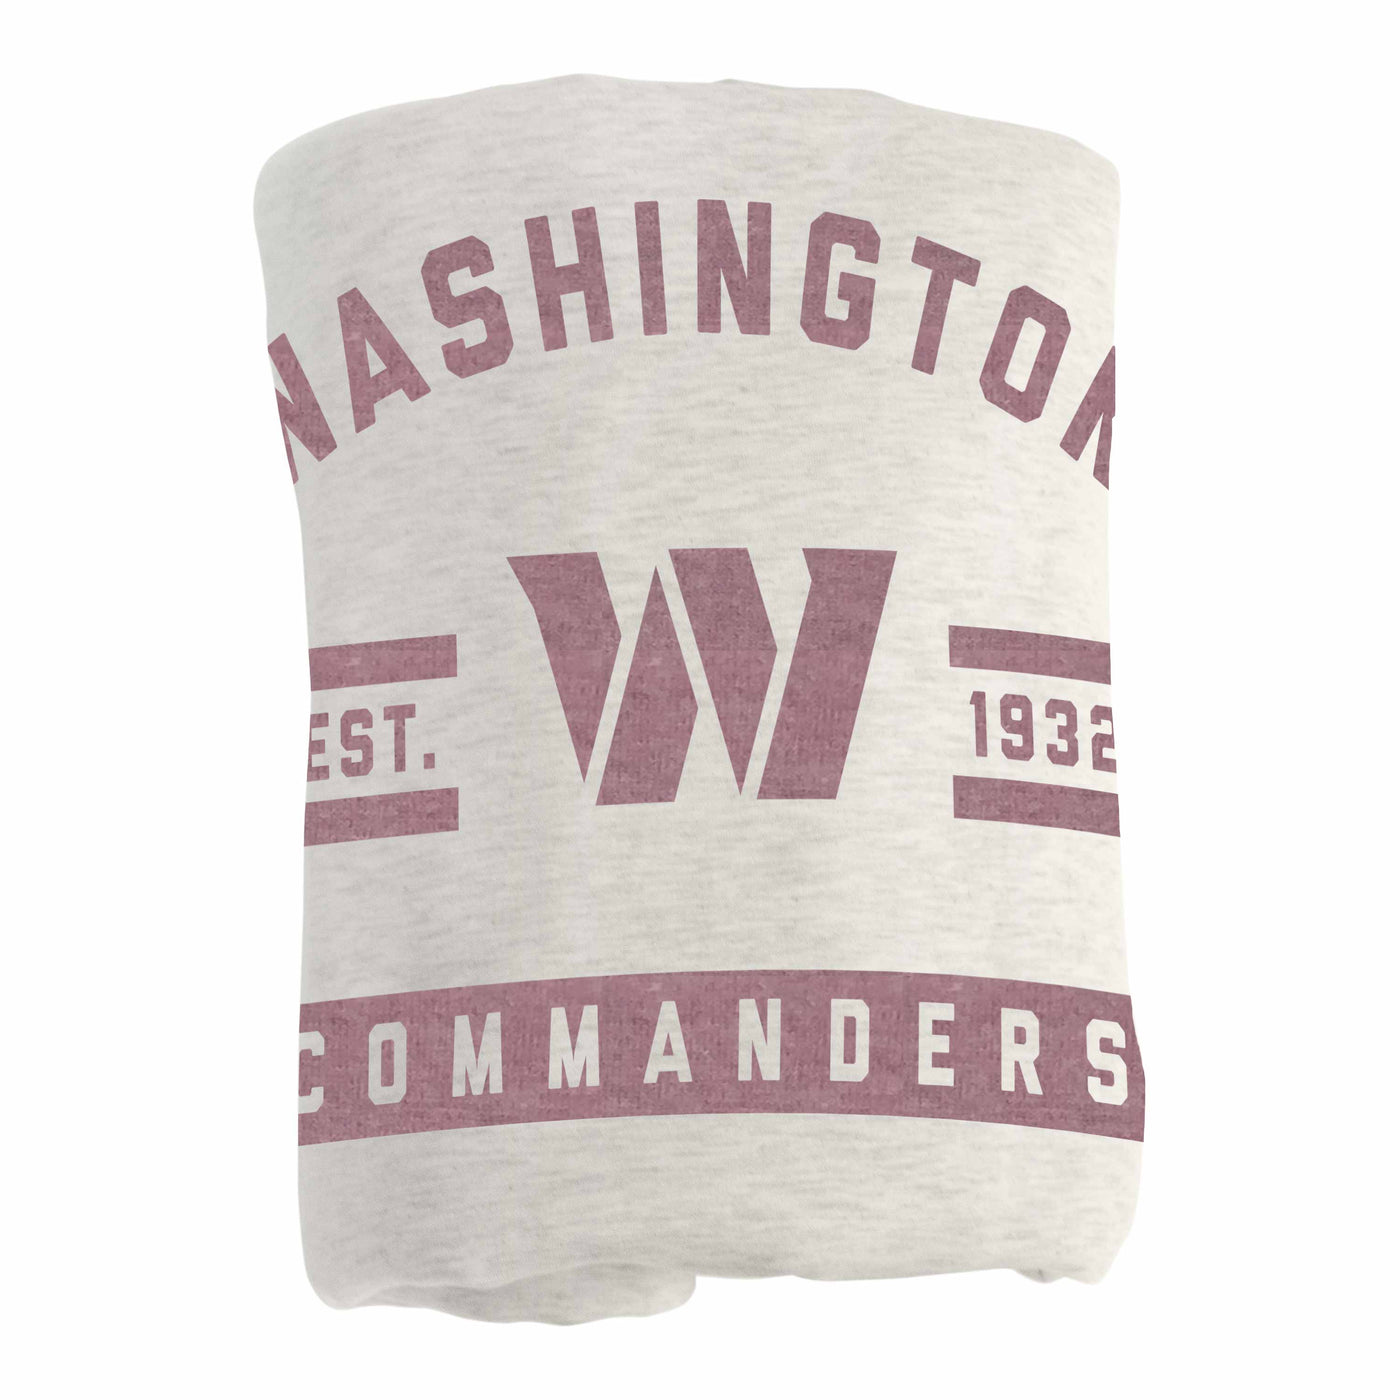 Washington Commanders Oatmeal Sweatshirt Blanket